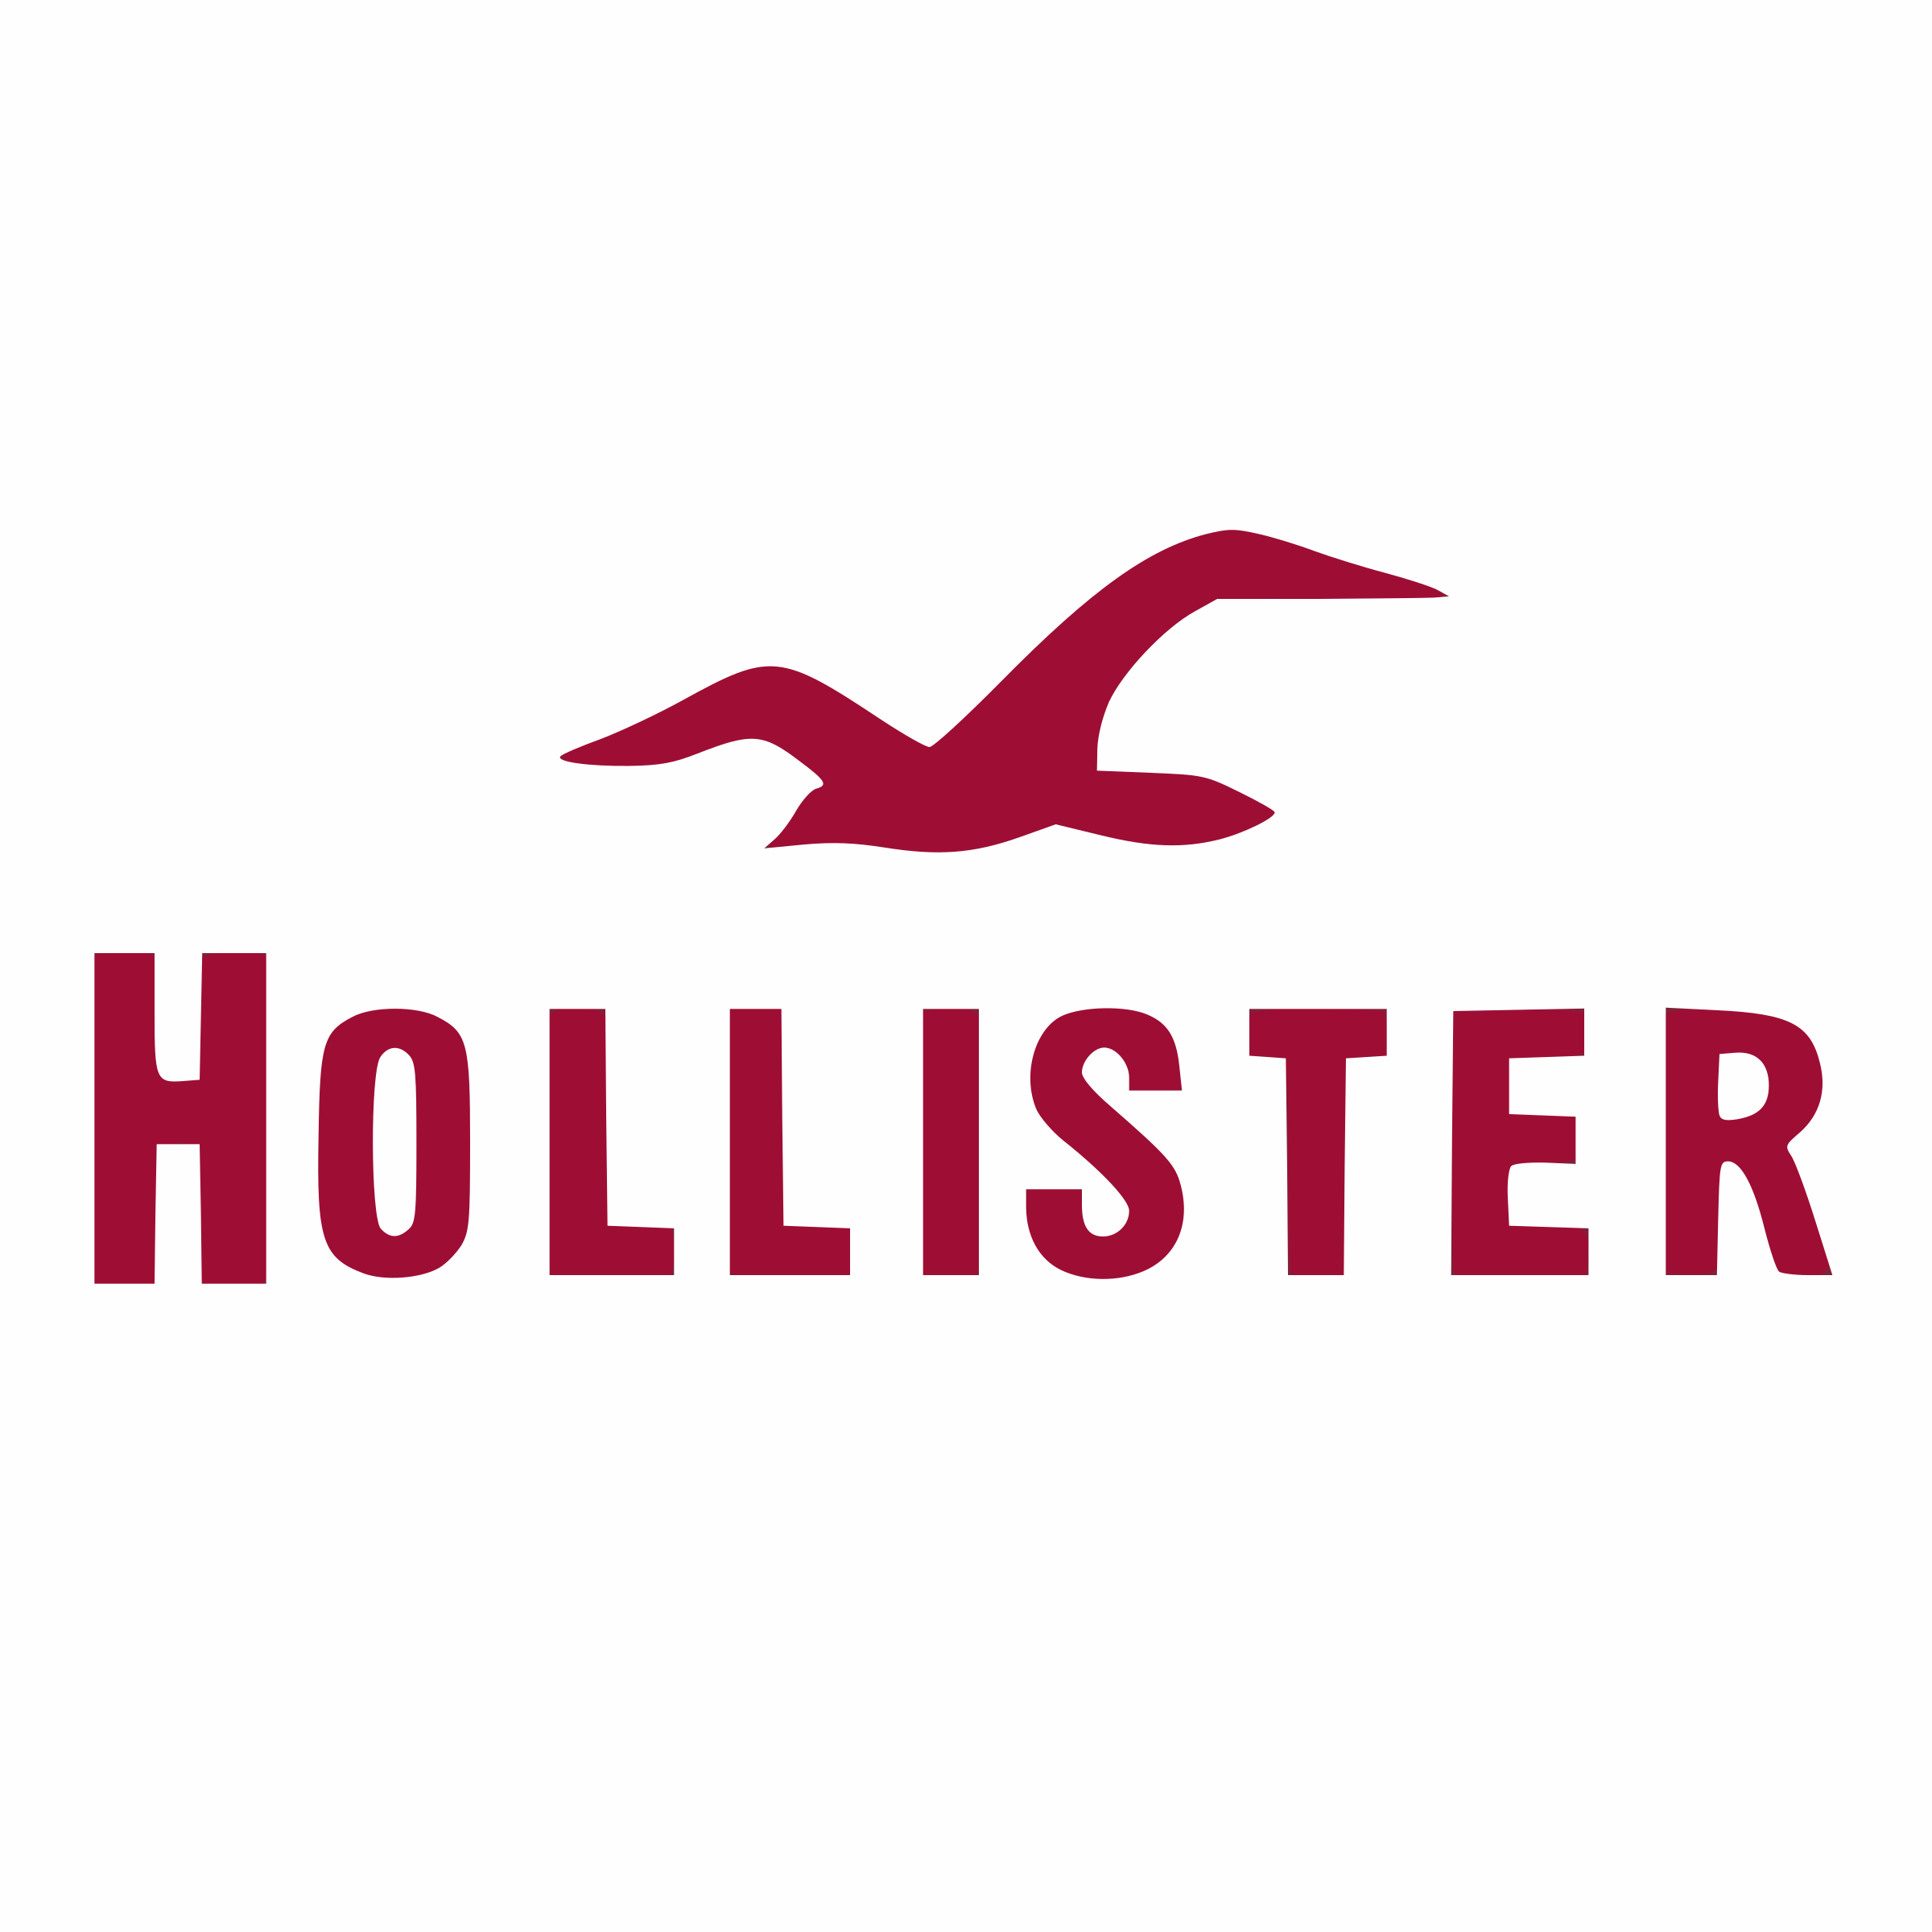 Hollister Logo - Hollister Logo PNG Transparent & SVG Vector - Freebie Supply